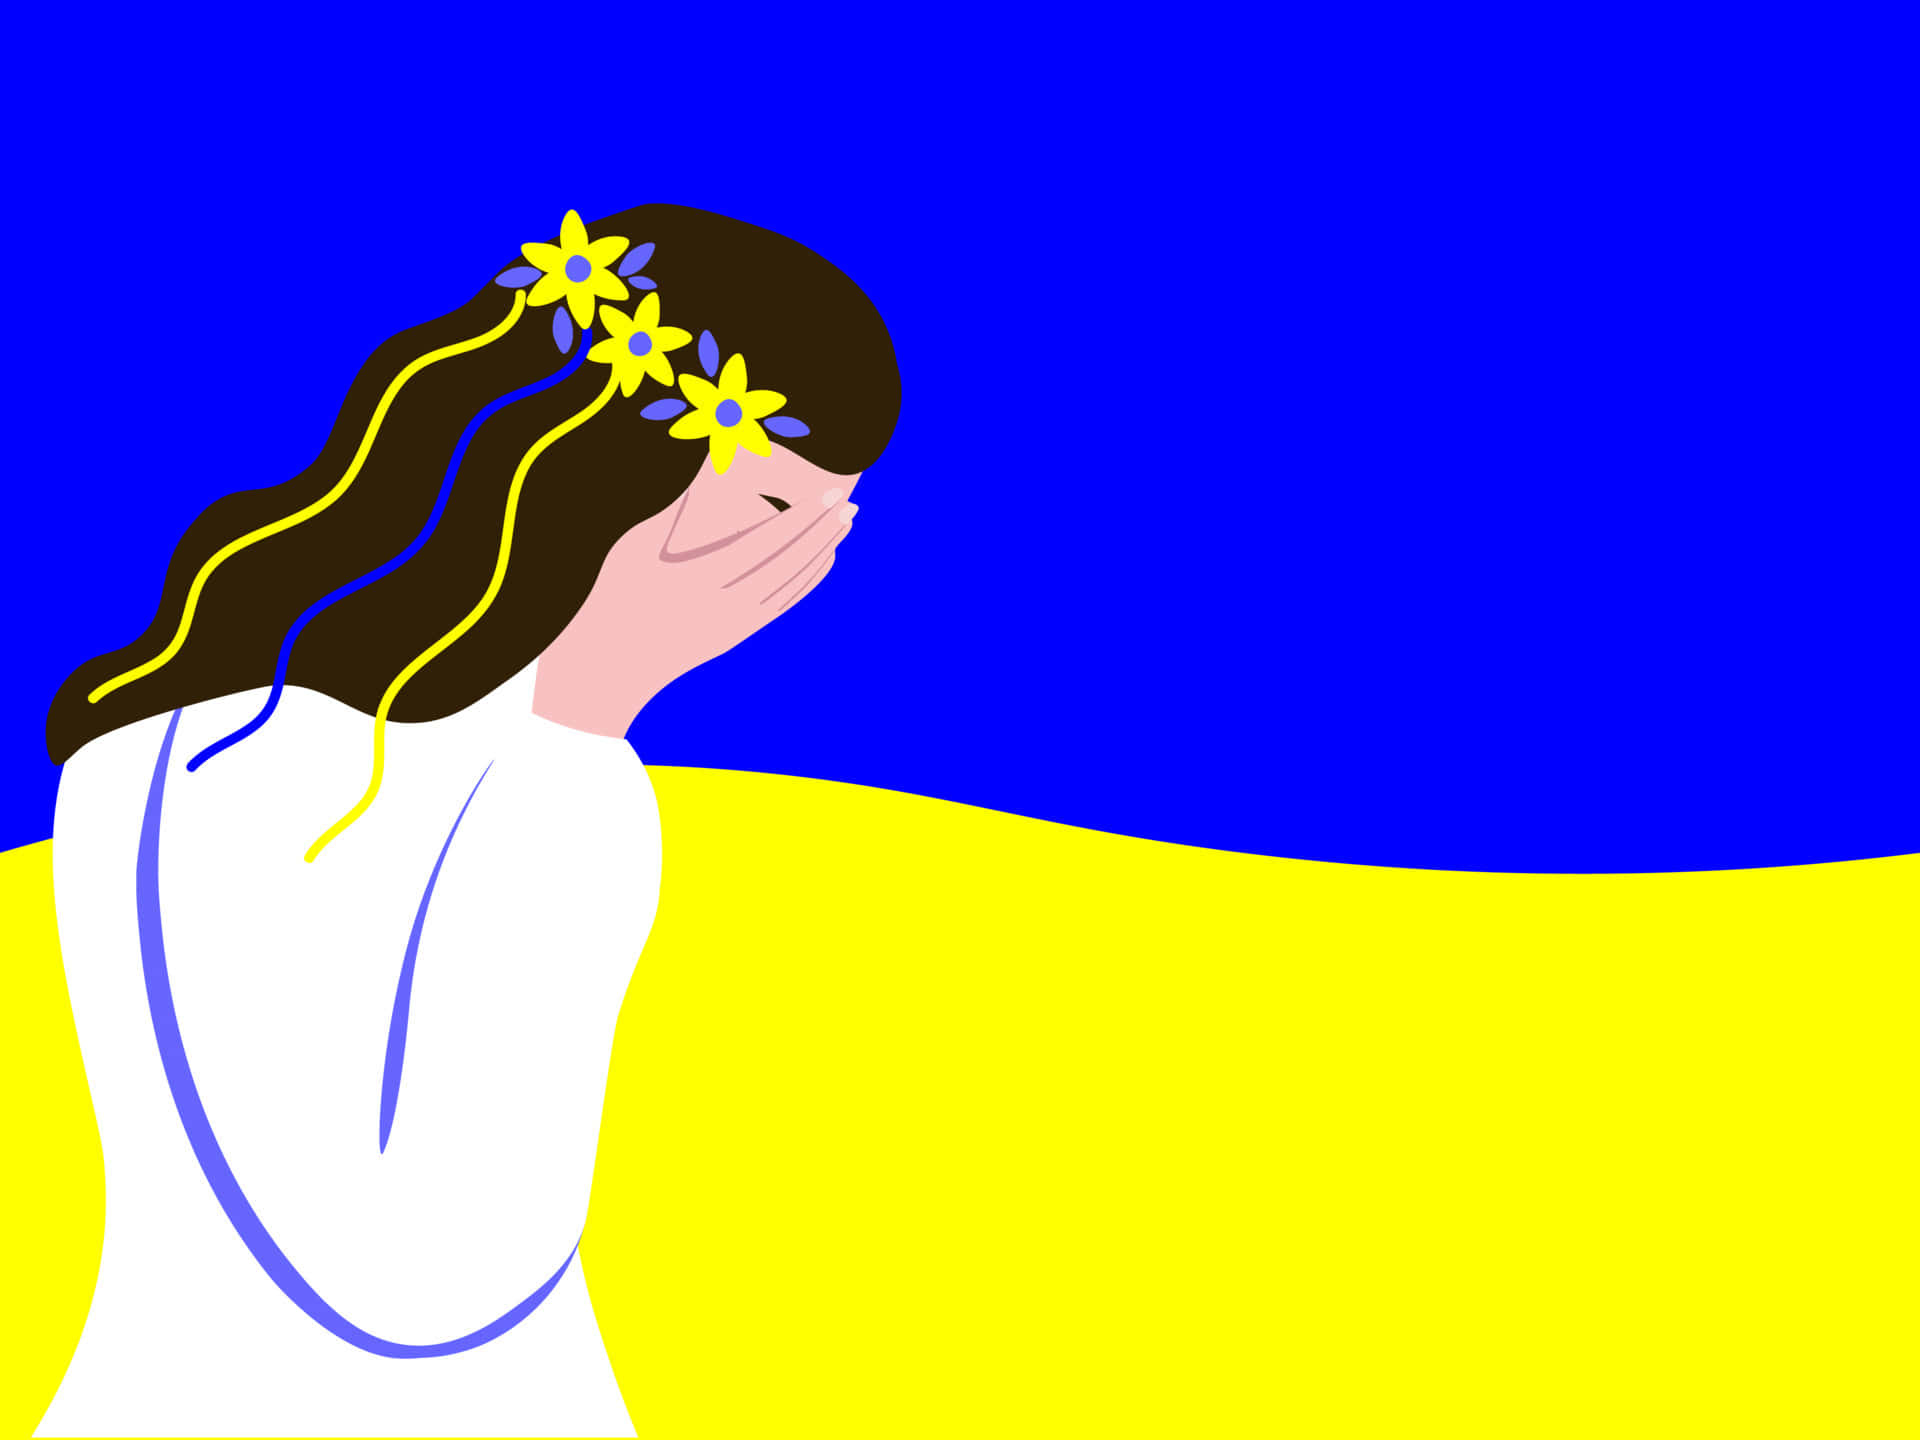 Tegning af flag blå og gul ukrainsk pige tapet Wallpaper